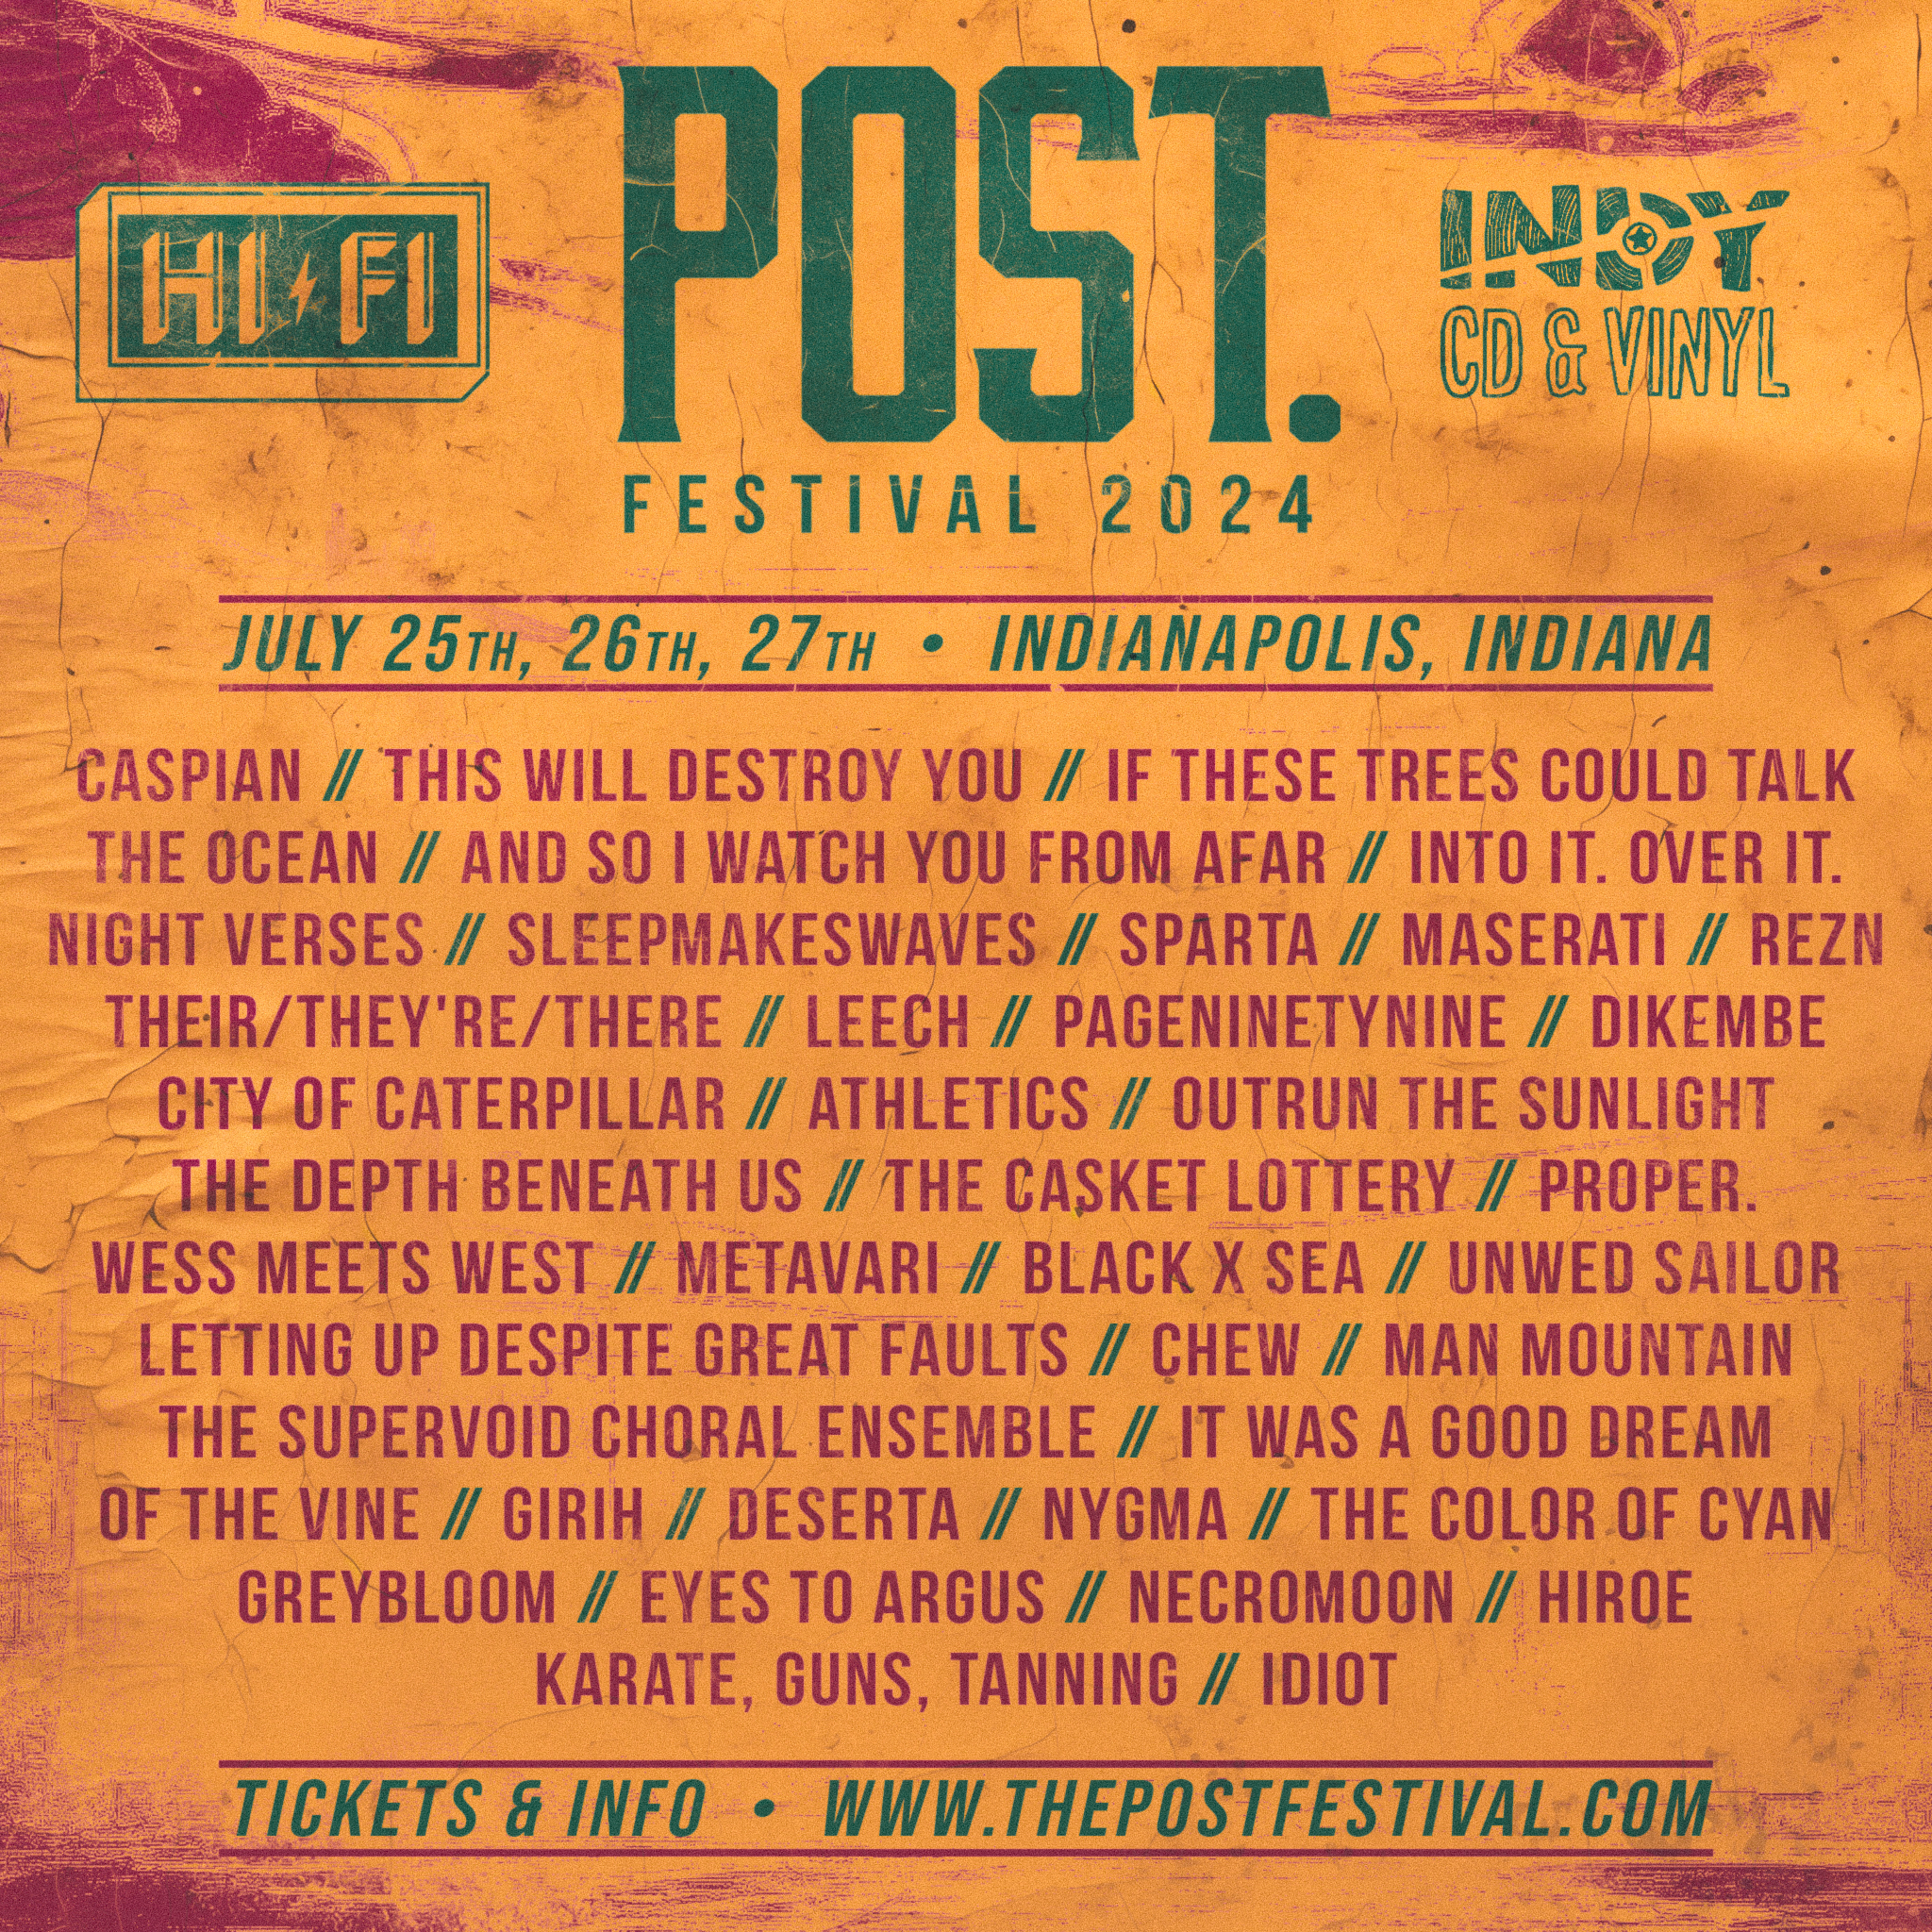 Post. Festival Full Lineup